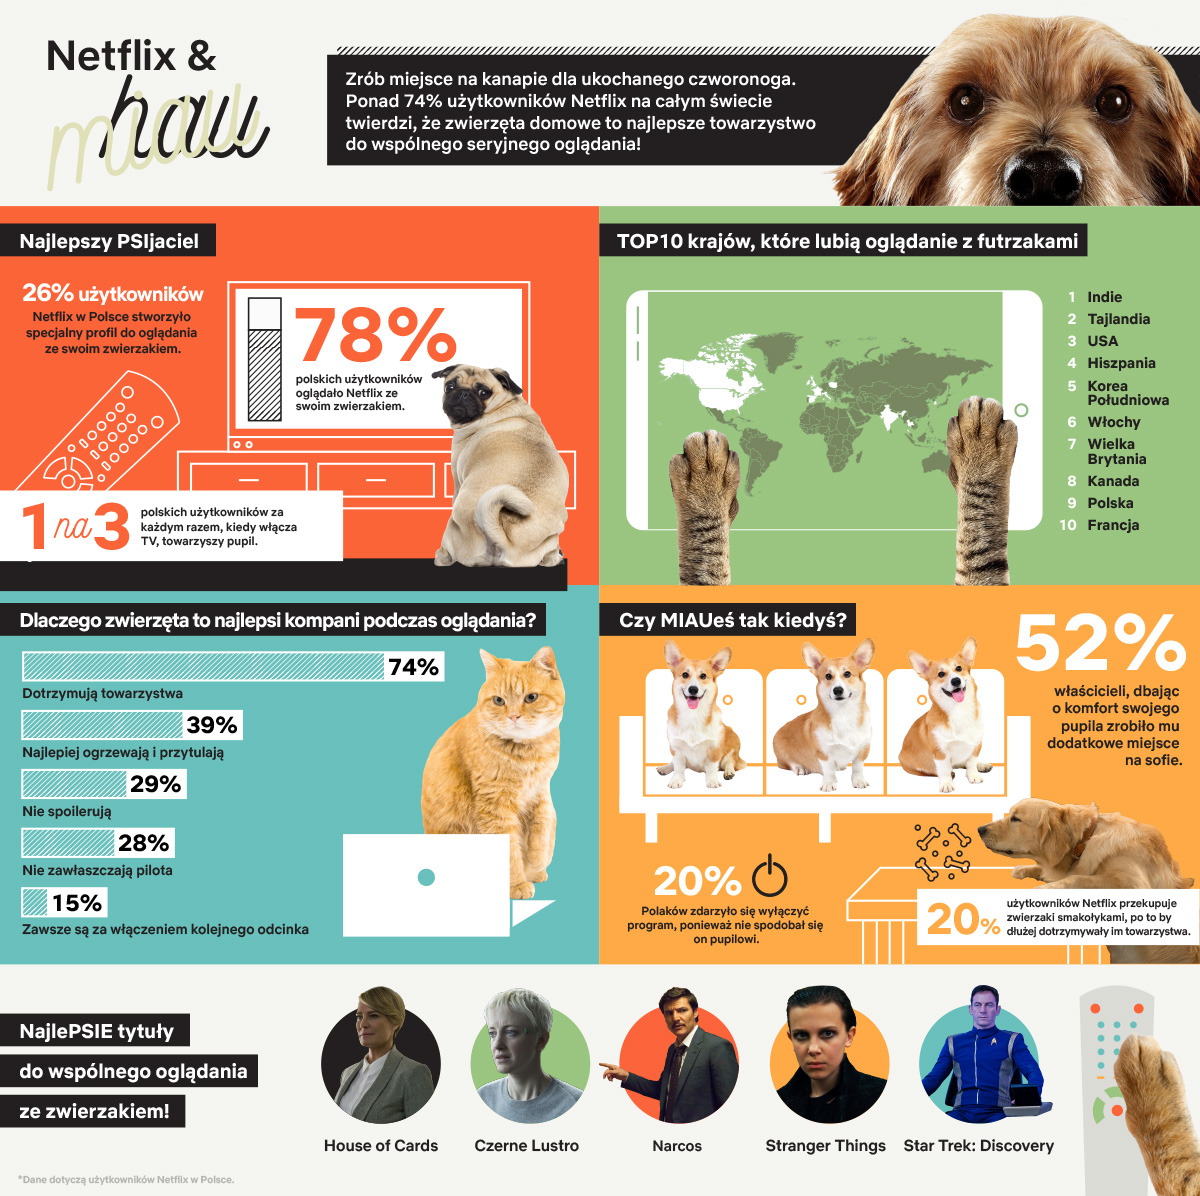 Netflix hau czy Netflix miau infografika Badania pokazały, że wolimy oglądać Netflix ze zwierzętami niż z ludźmi